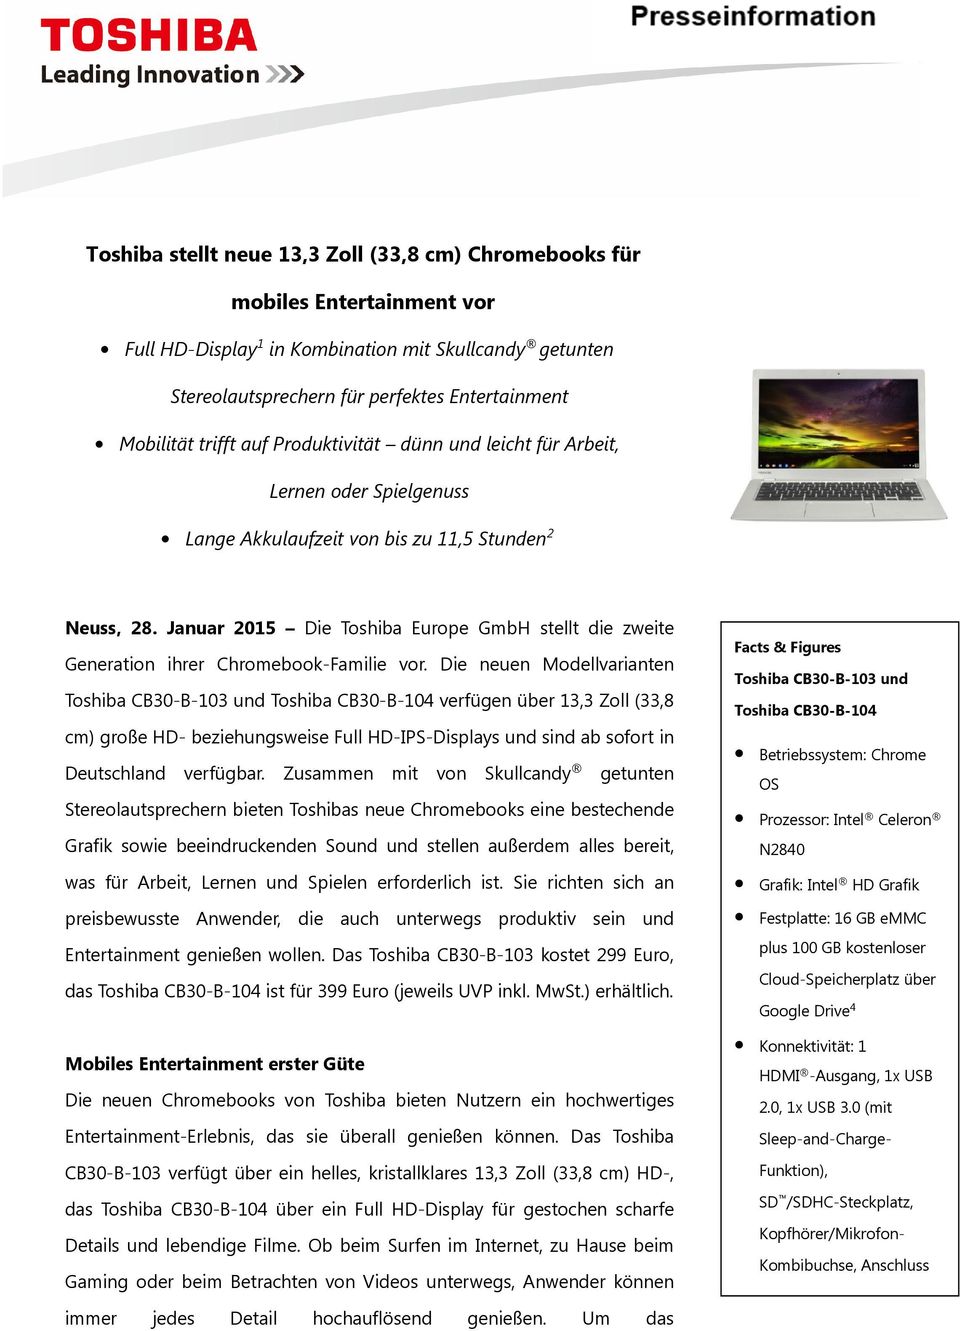 Januar 2015 Die Toshiba Europe GmbH stellt die zweite Generation ihrer Chromebook-Familie vor.